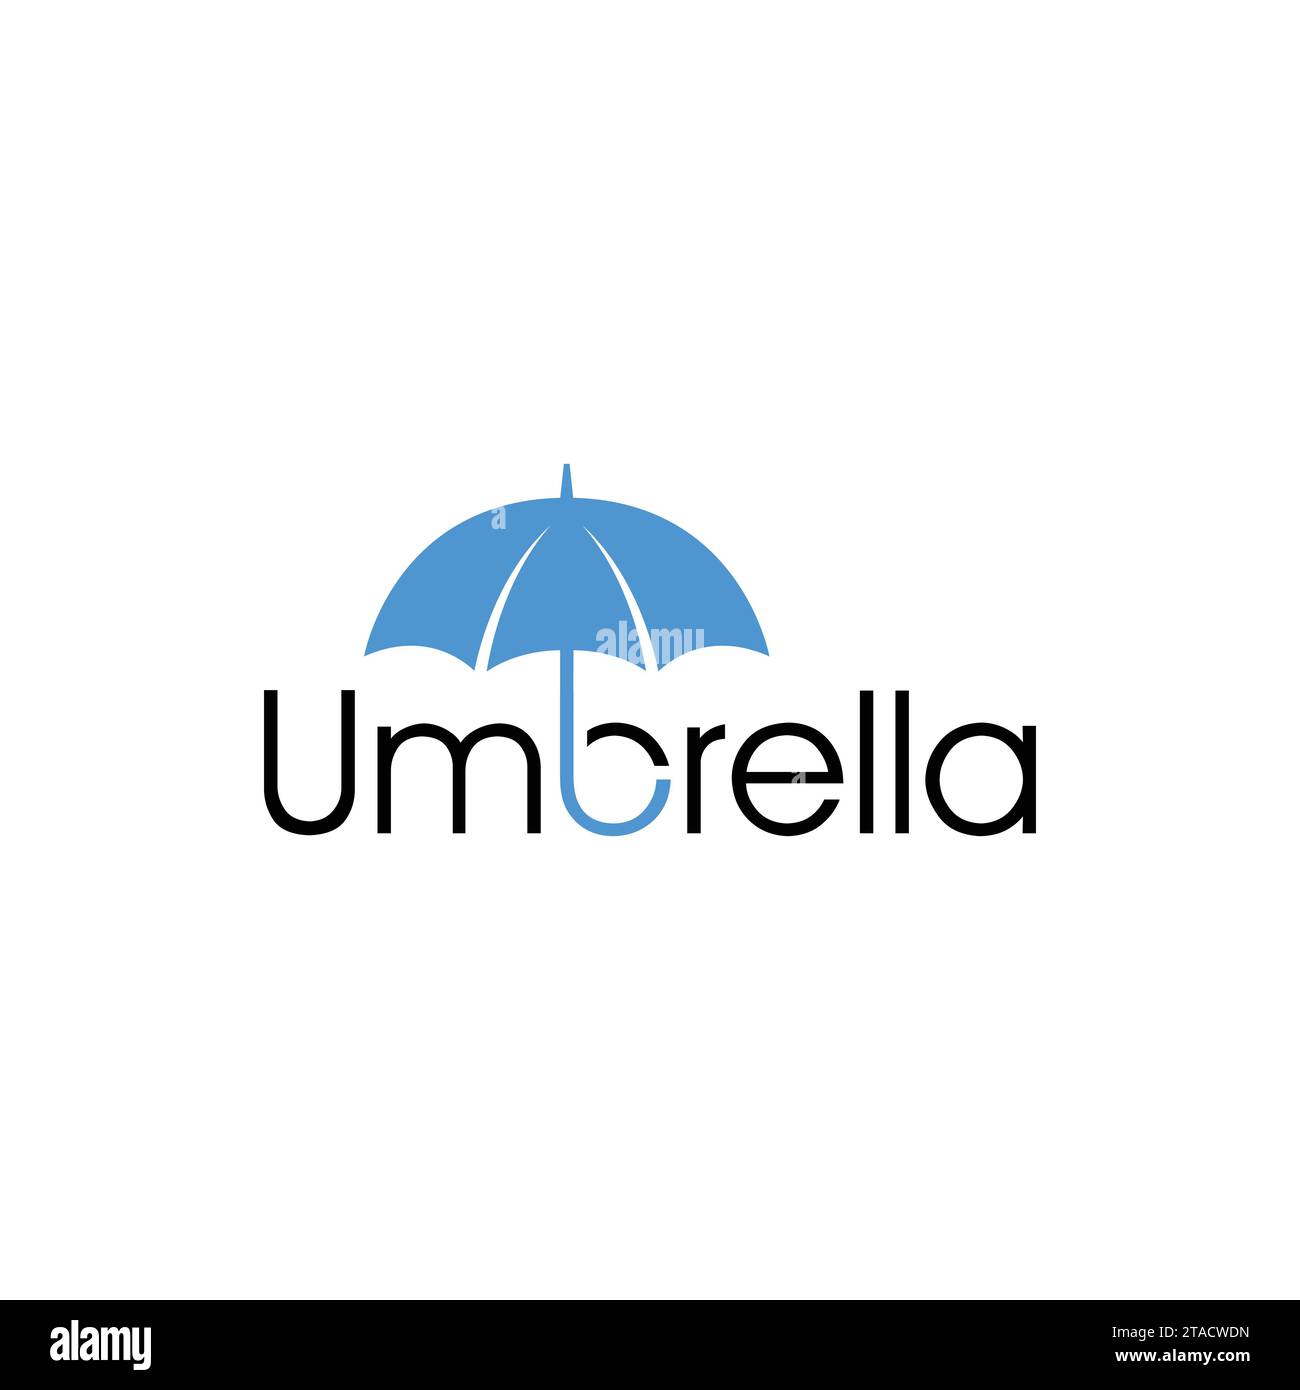 Vektor minimalistische Regenschirm Typografie Logo Design Vorlage isoliert auf weißem Hintergrund. Design-Vorlage für kreative Vektorschirmtexte. Stock Vektor